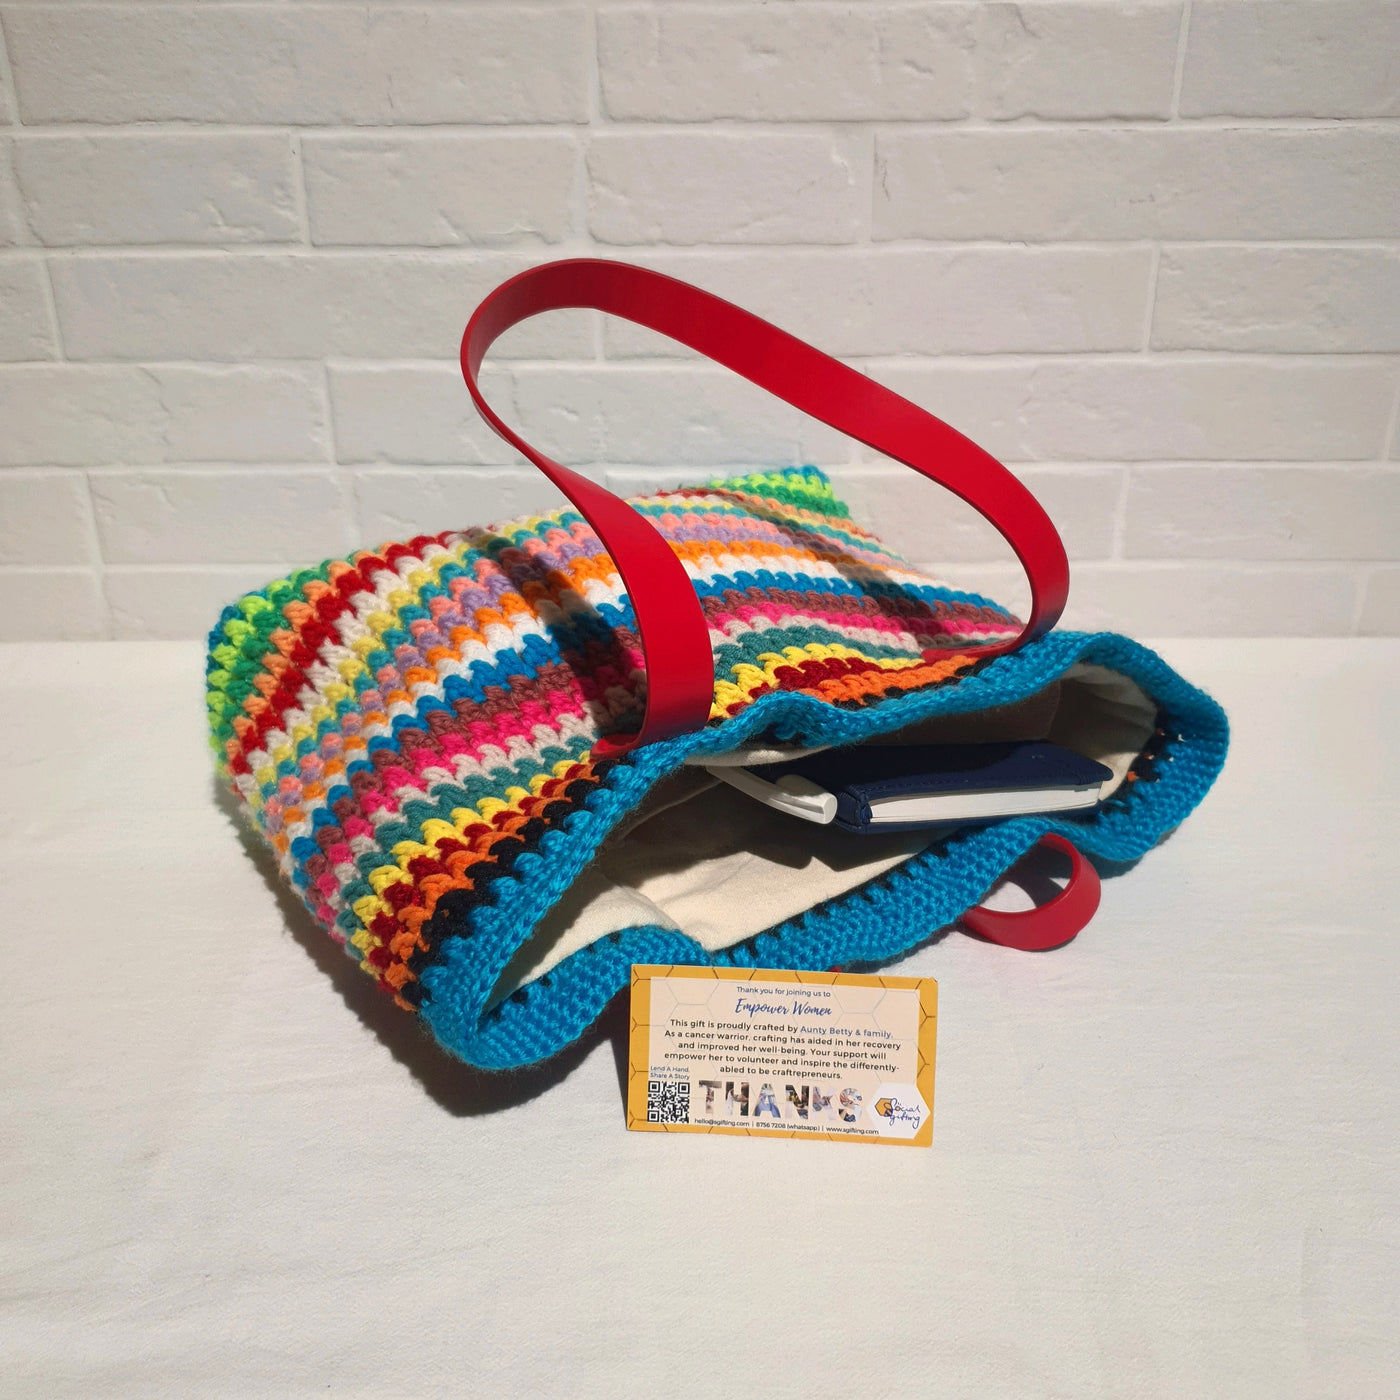 Hand Crocheted Multi-coloured Shoulder Bag